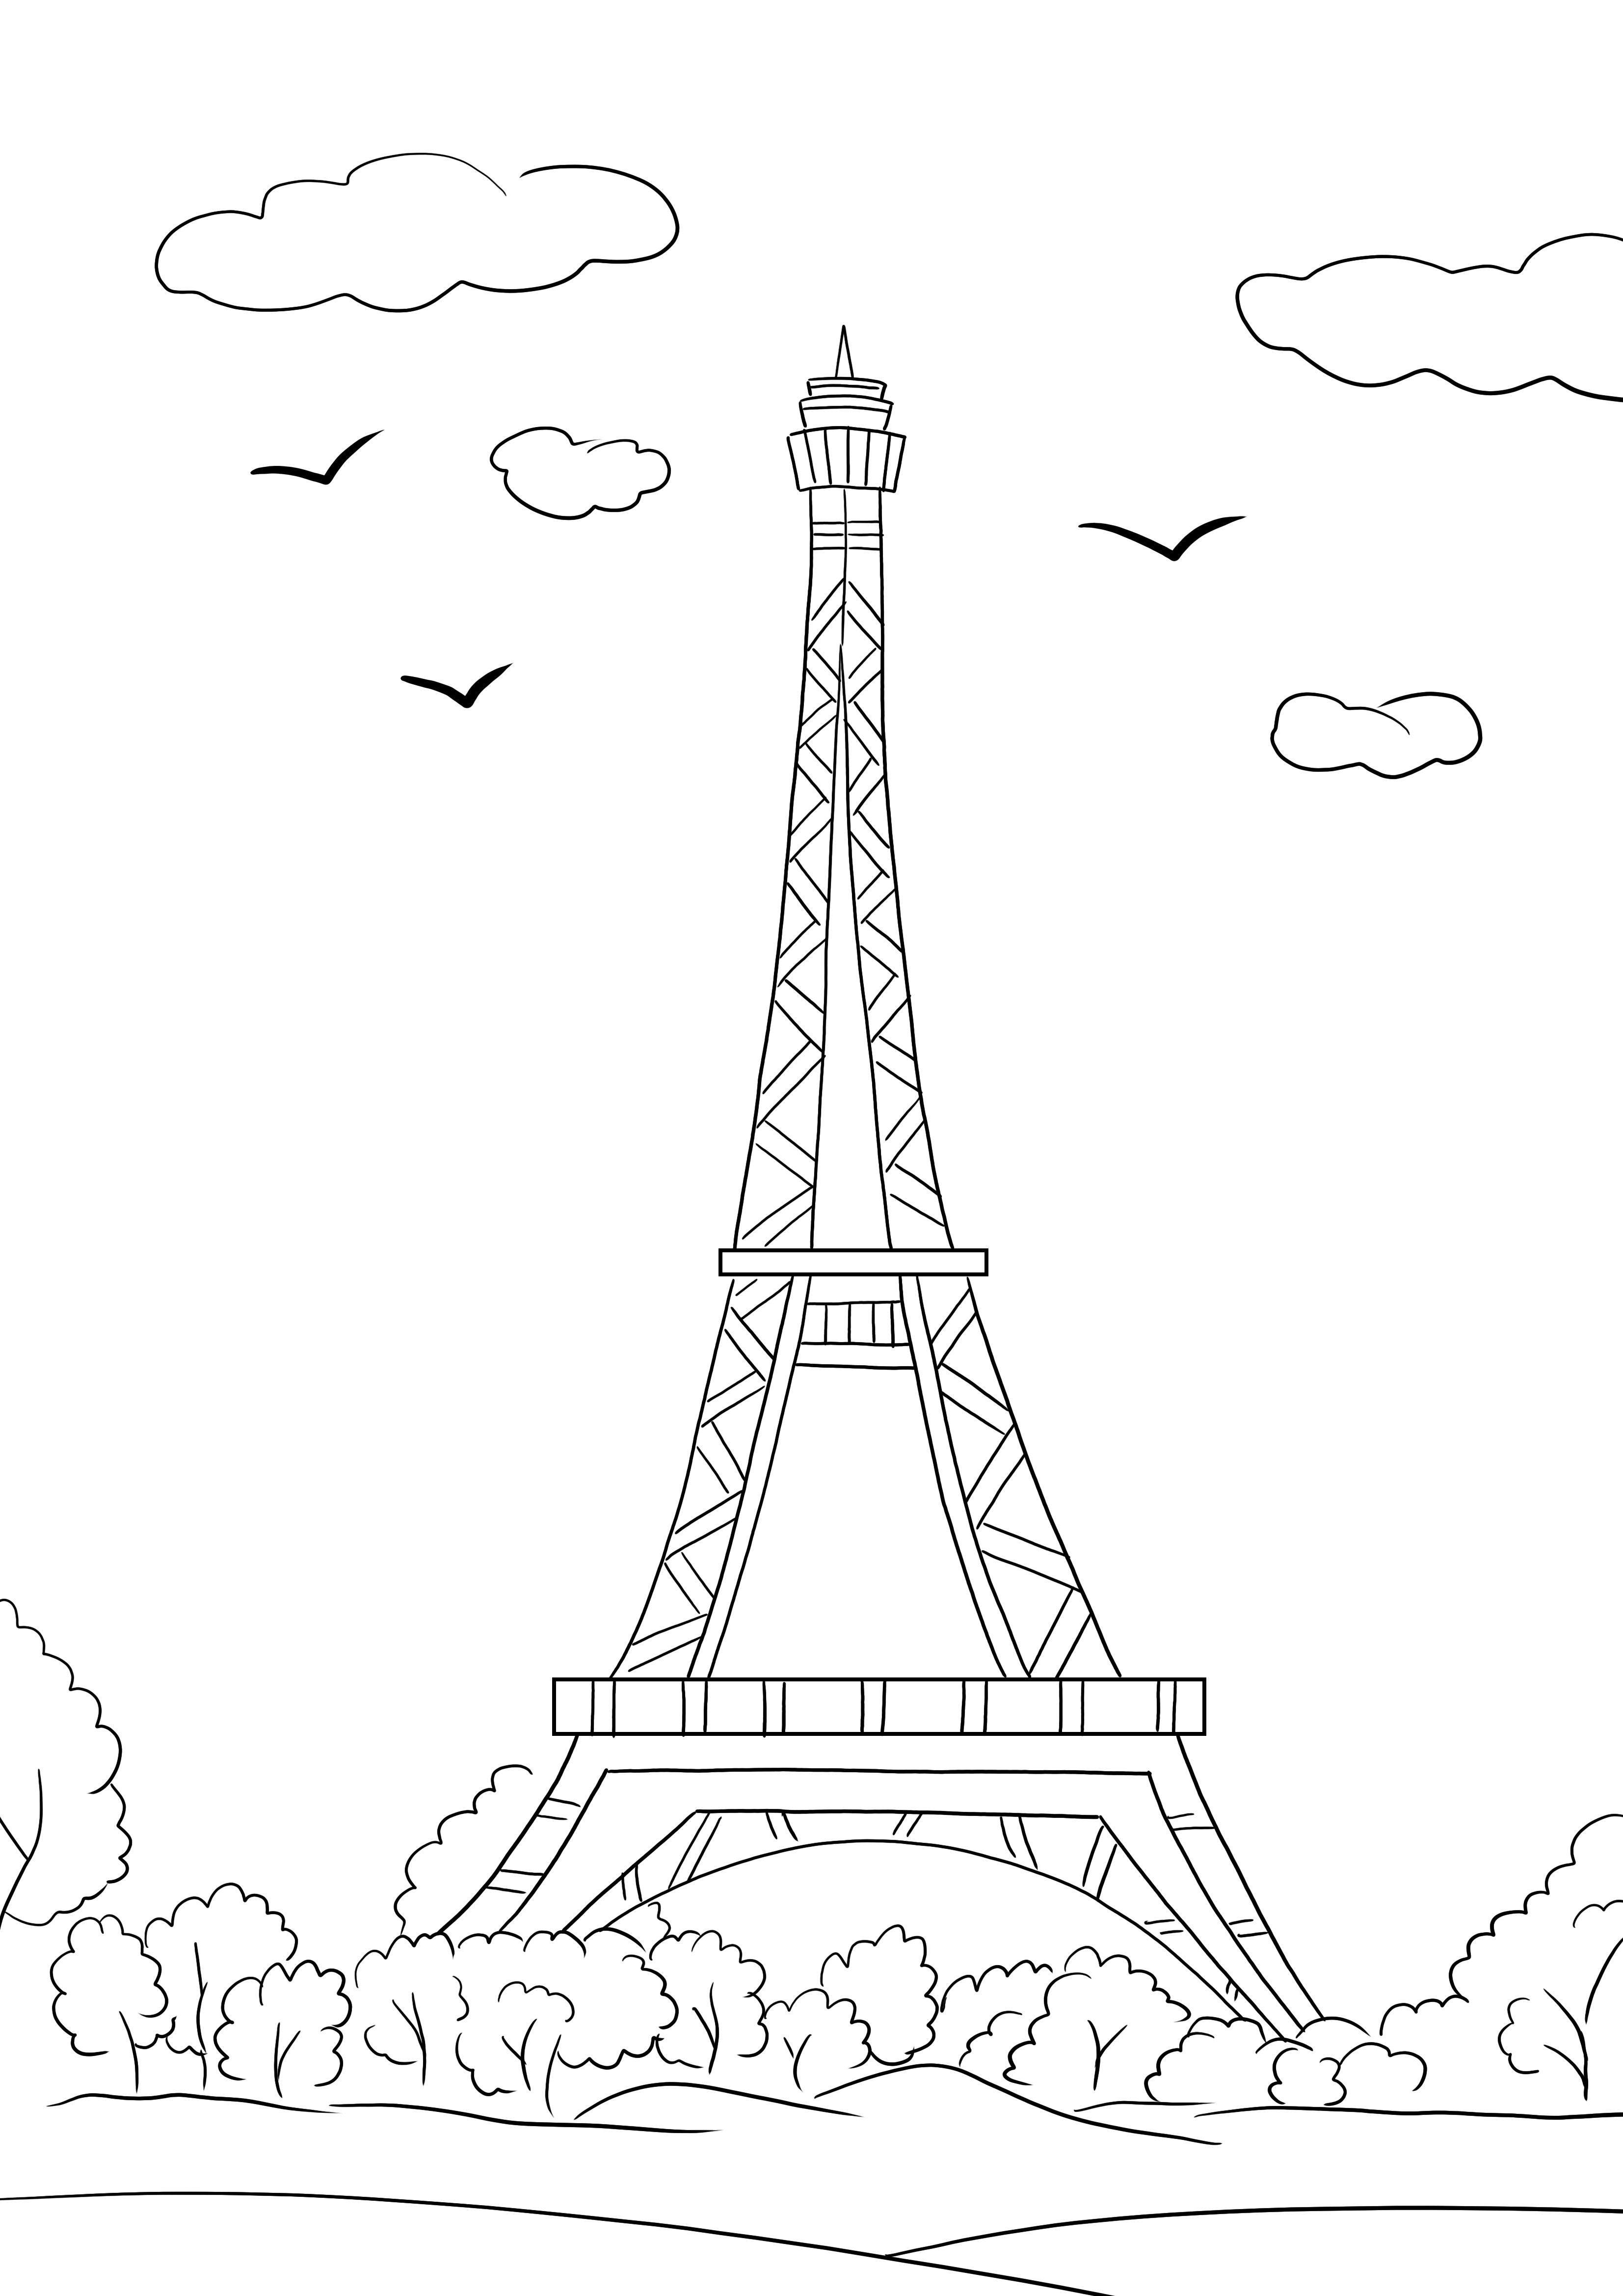 Torre Eiffel gratis para imprimir y colorear página para aprender más sobre monumentos famosos